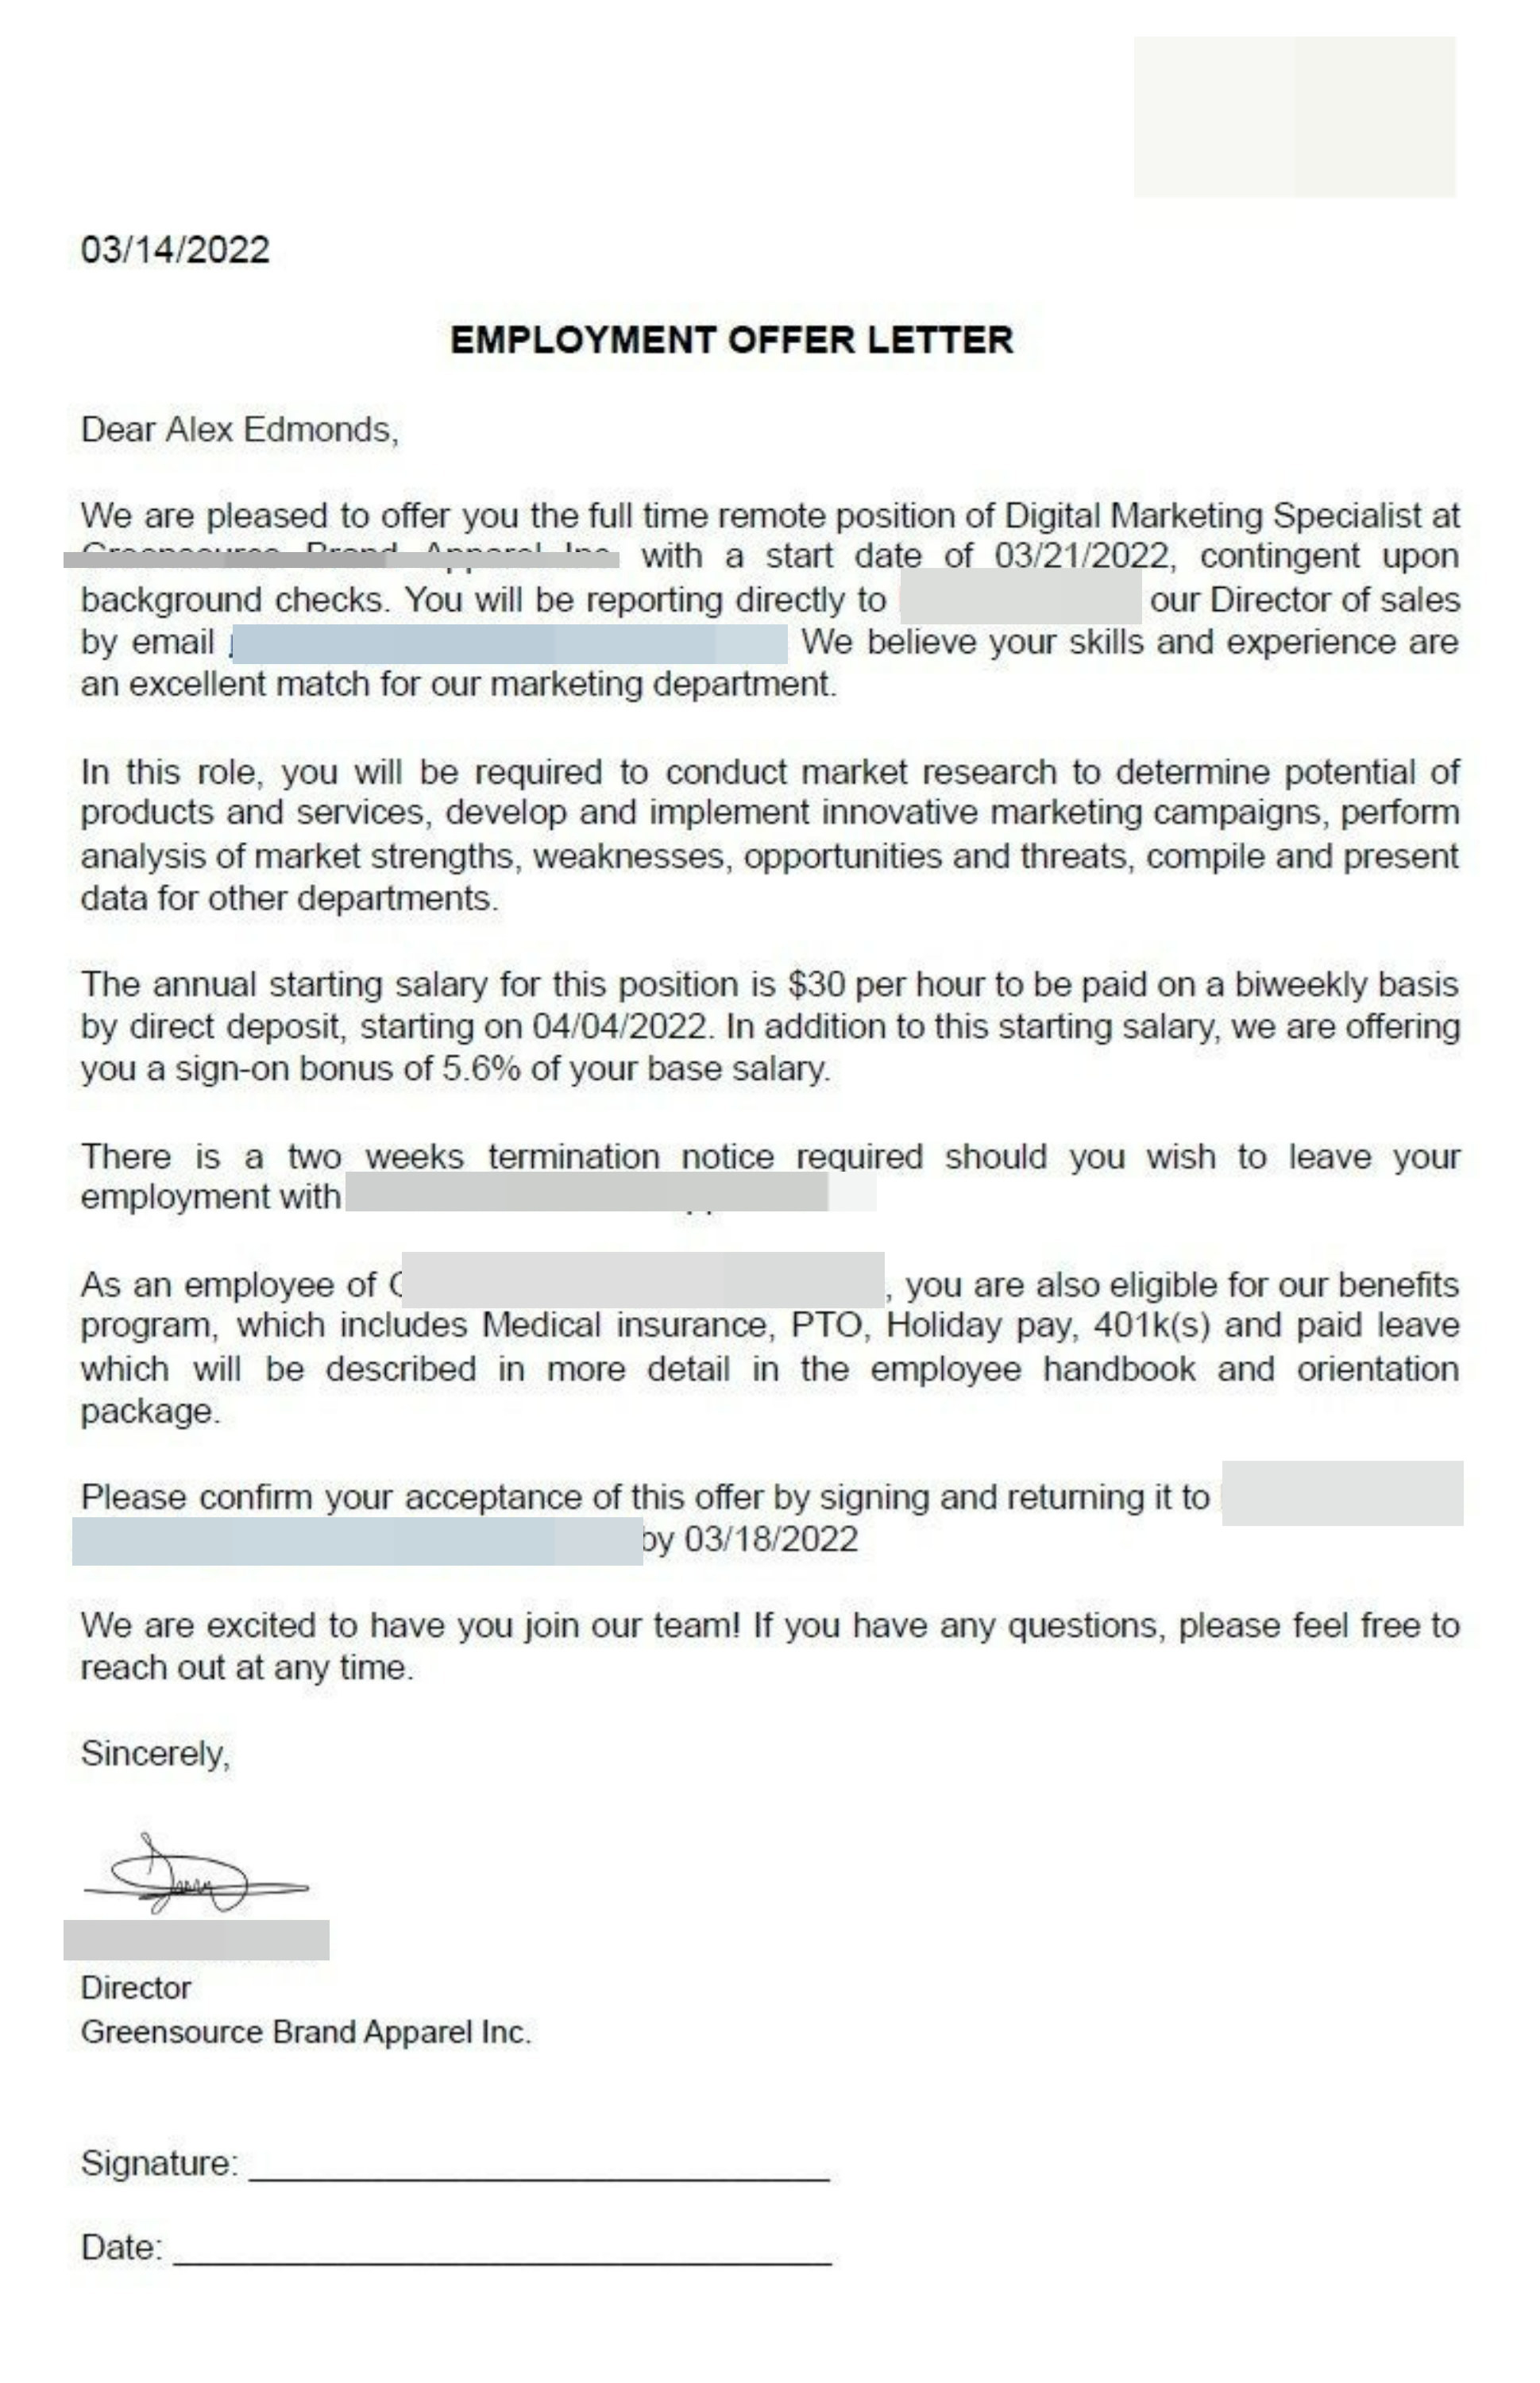 Greensource remote job scam offer letter screenshot